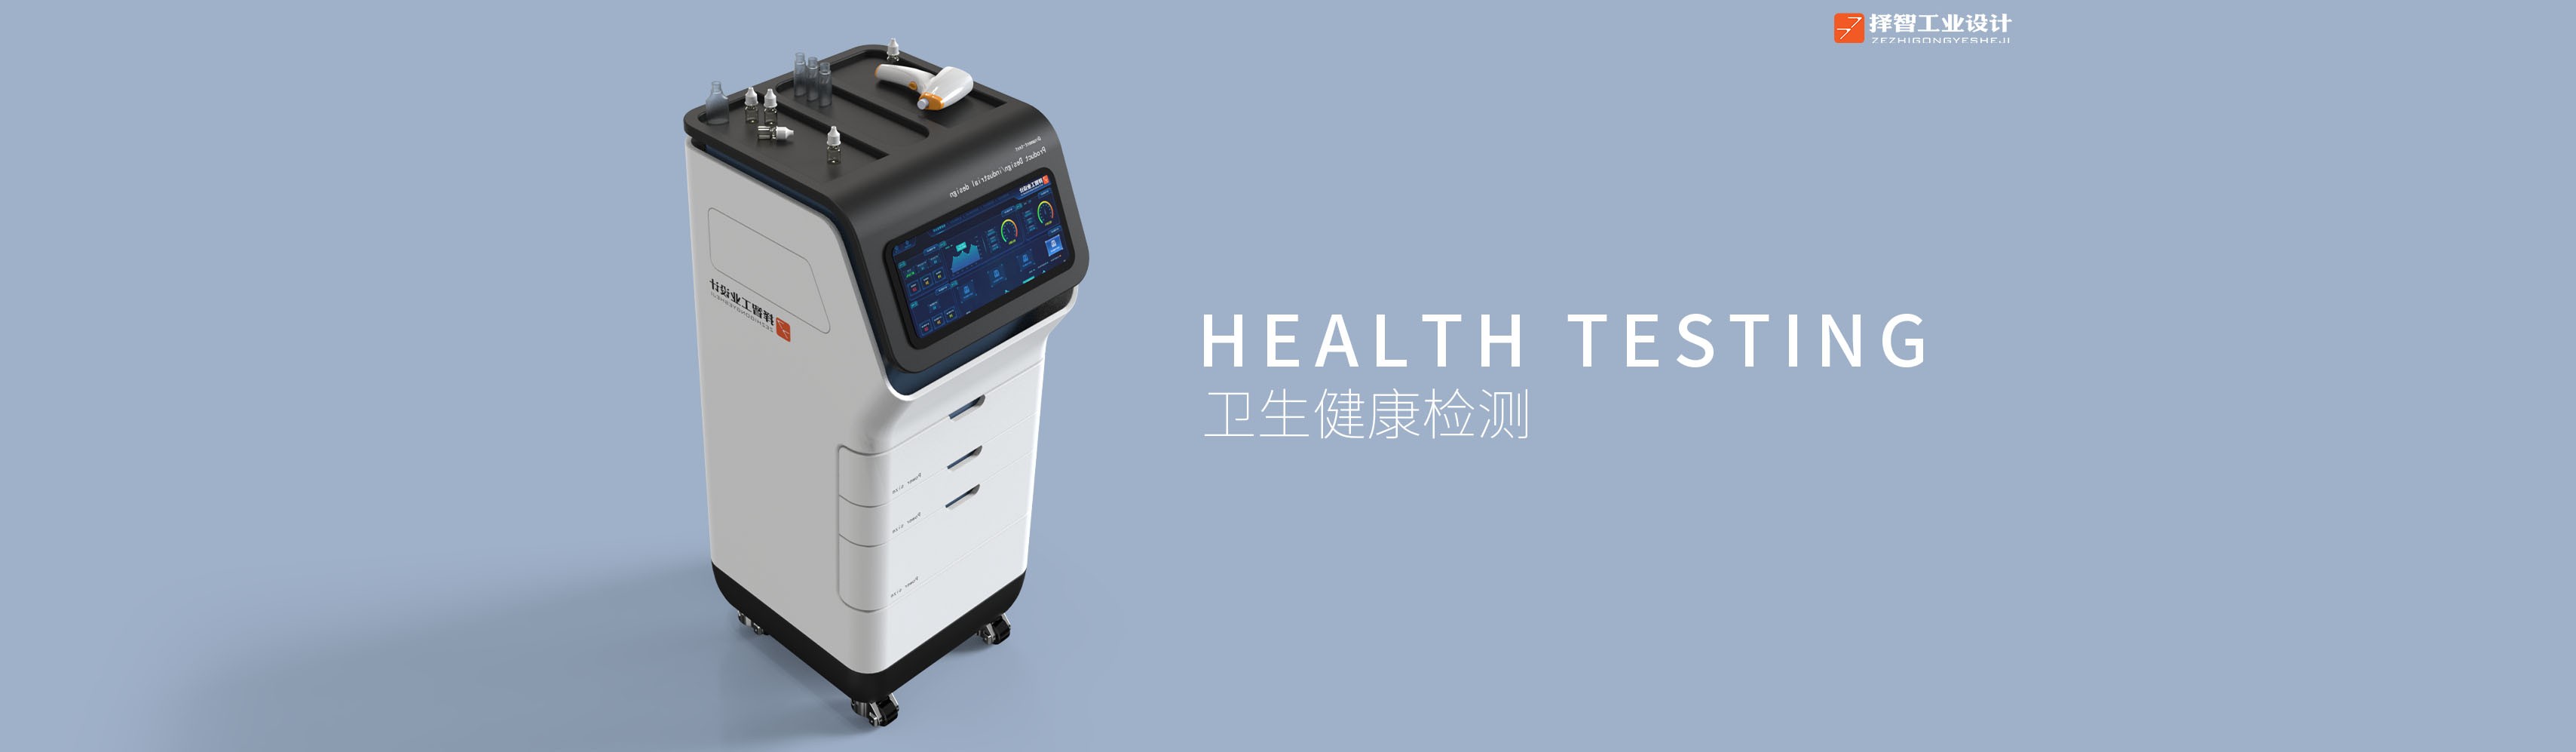 上海苏州产品设计工业产品外观设计结构设计卫生健康检测仪